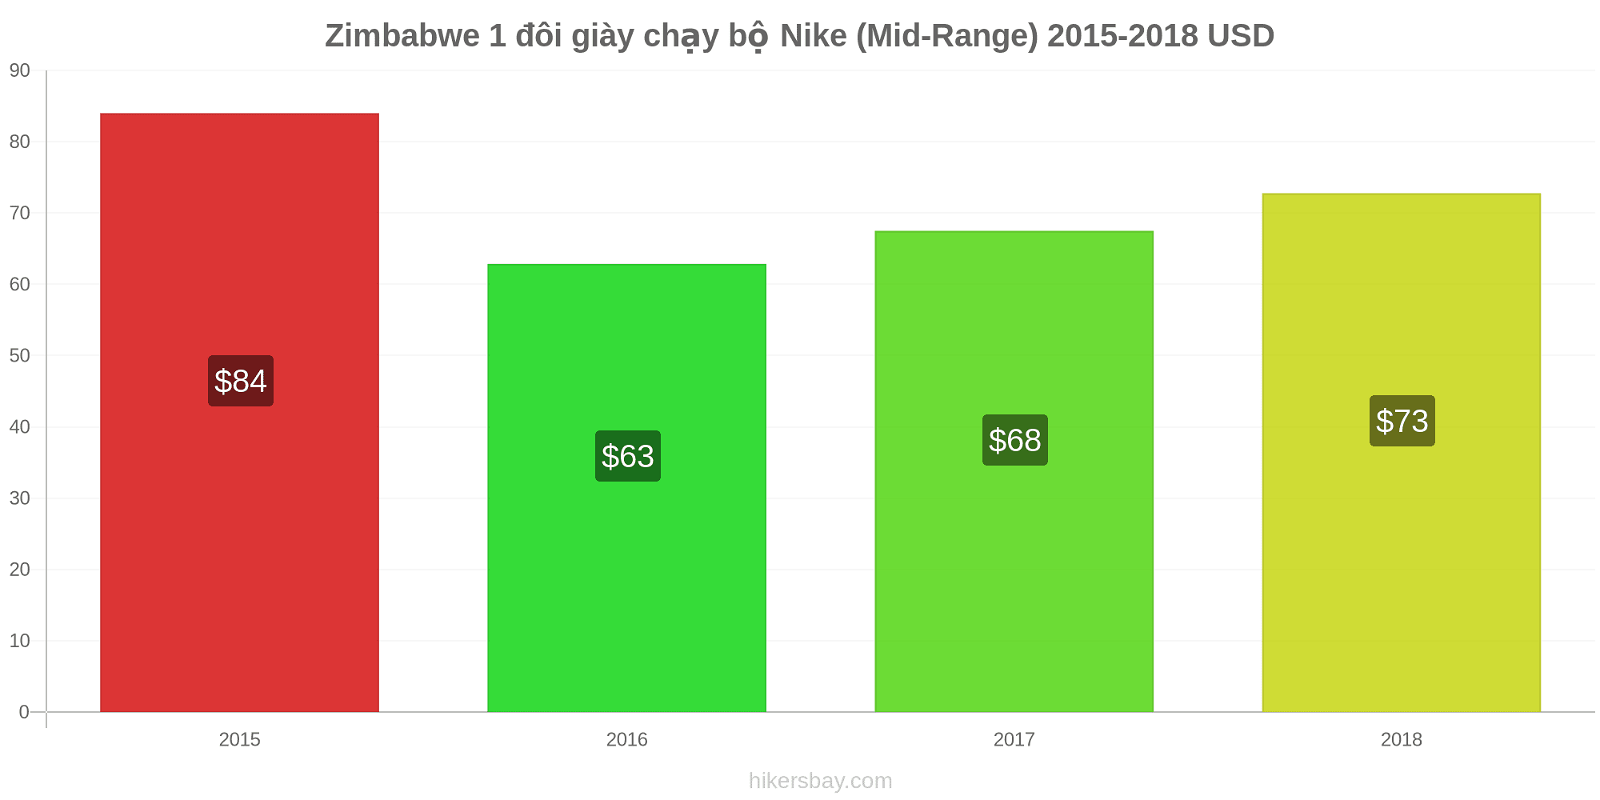 Zimbabwe thay đổi giá 1 đôi giày chạy bộ Nike (Mid-Range) hikersbay.com